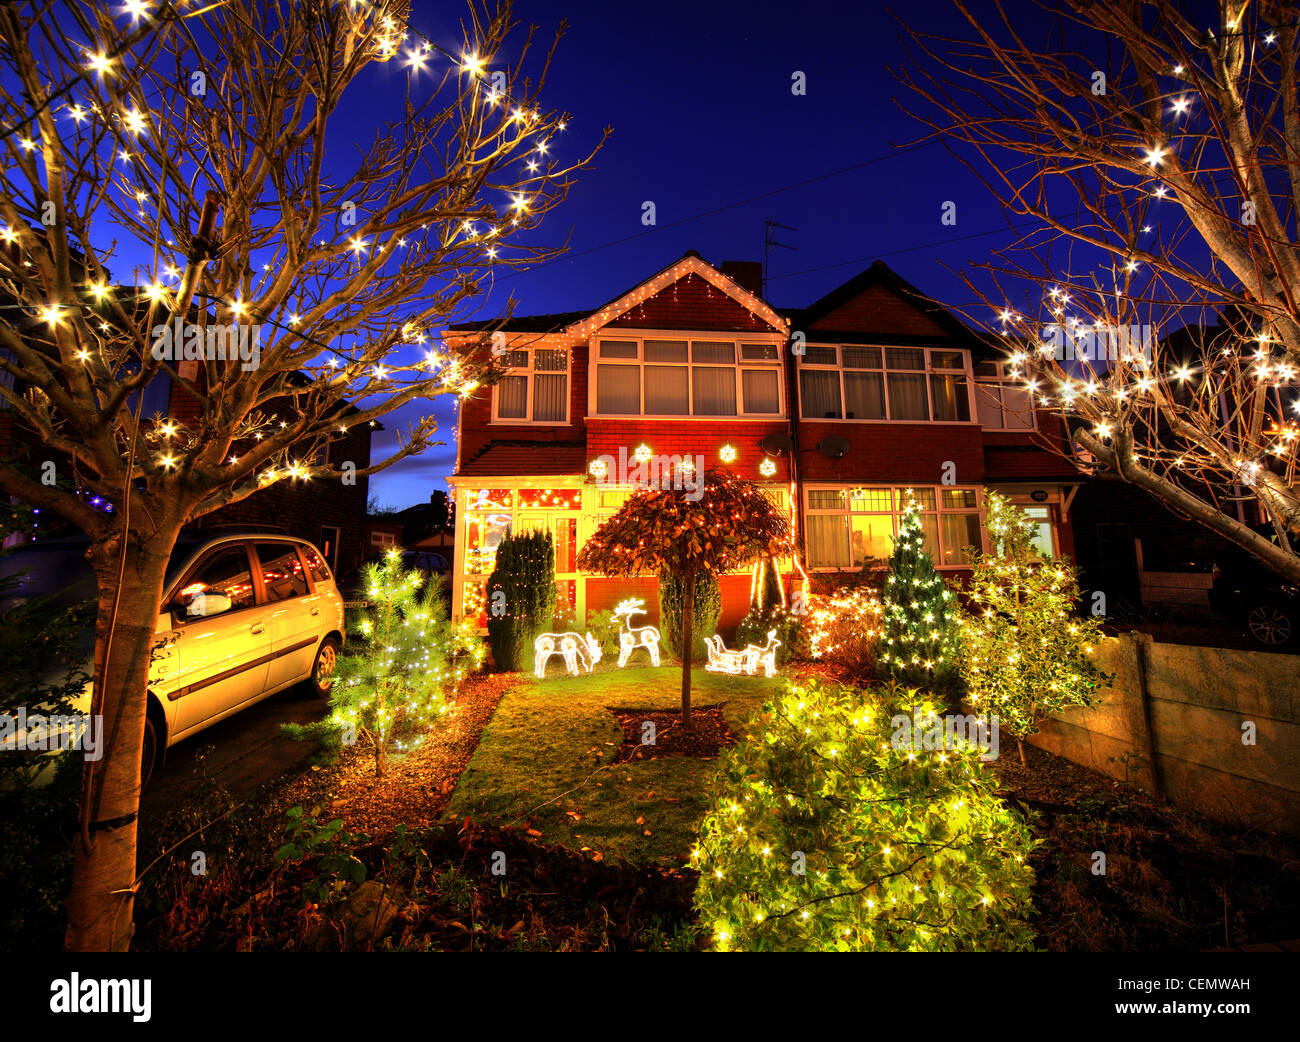 320 Padgate Lane Christmas lights Dusk, Warrington Cheshire England, UK super Xmas illuminations crazy interesting Stock Photo